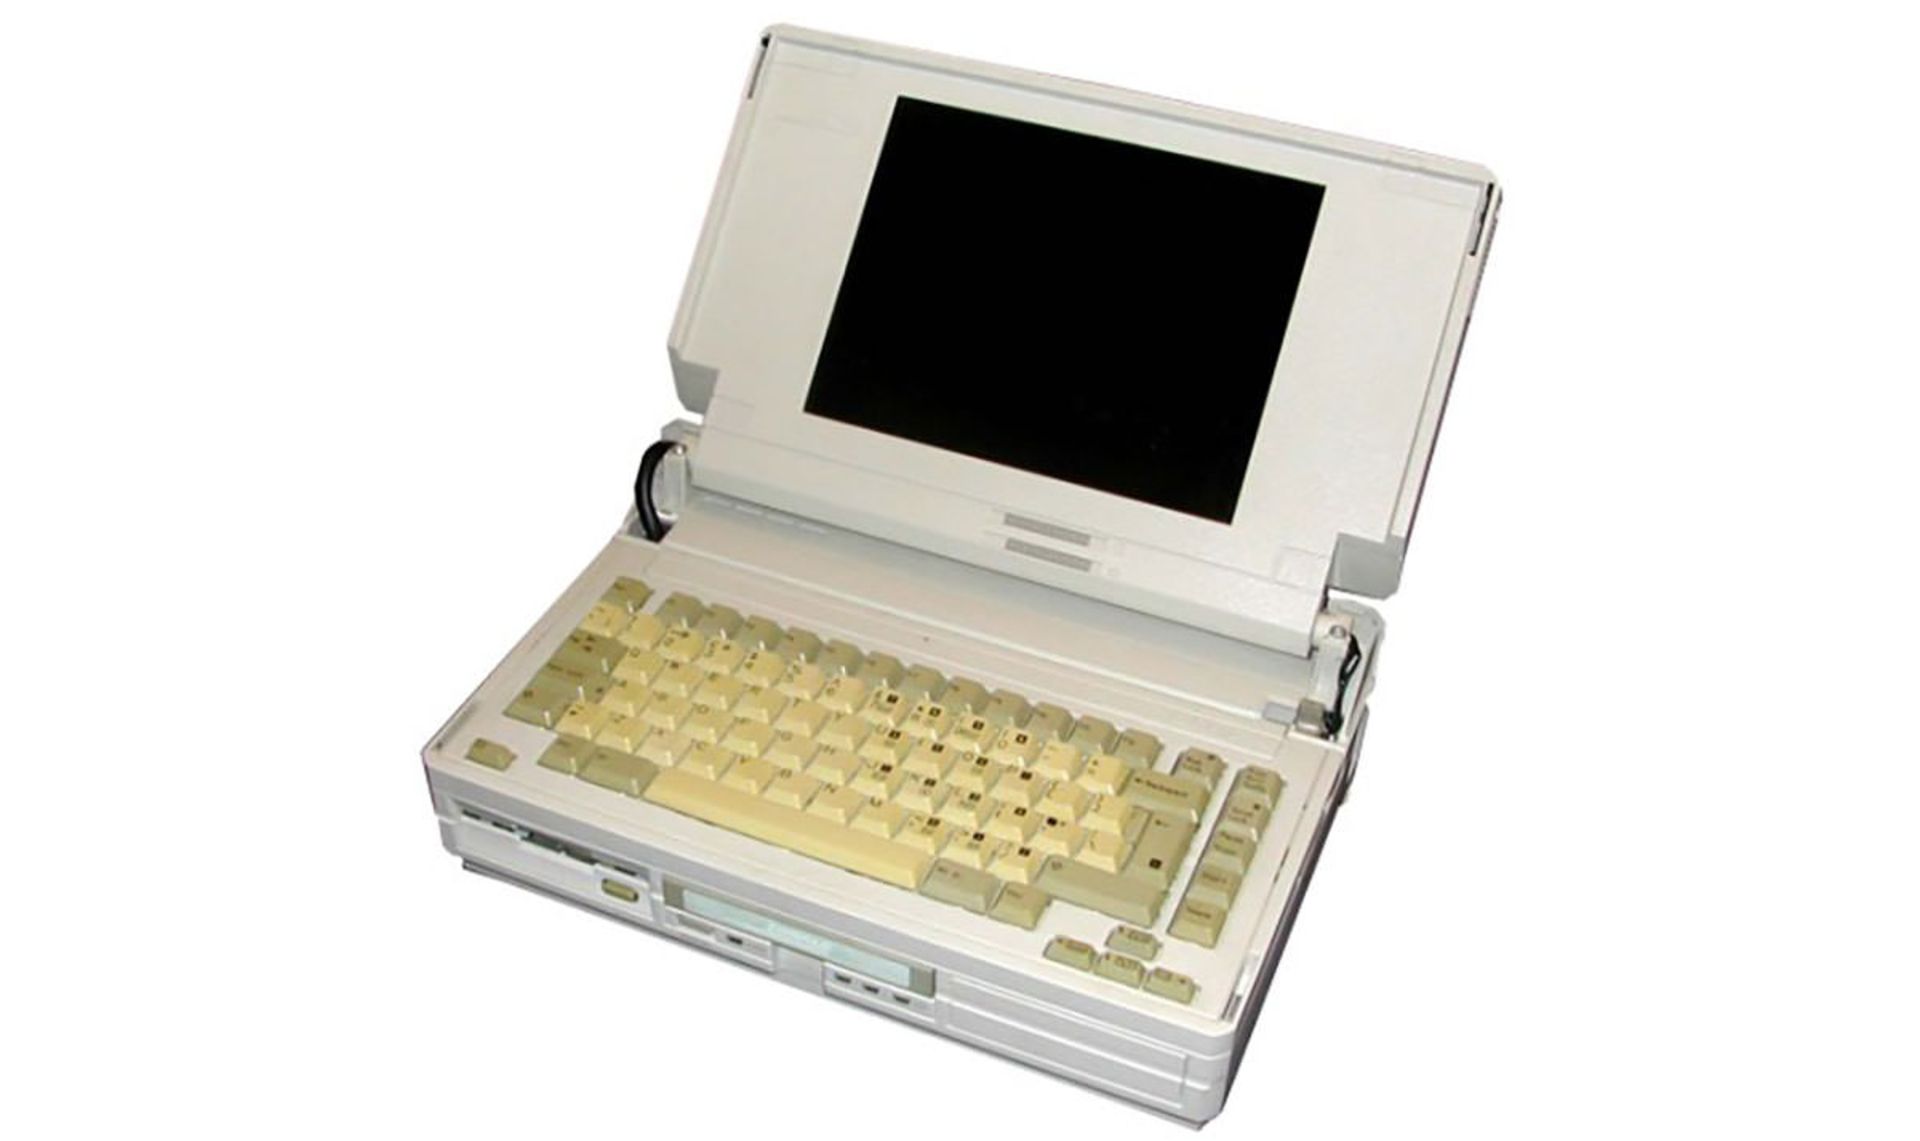  Compaq Portable SLT